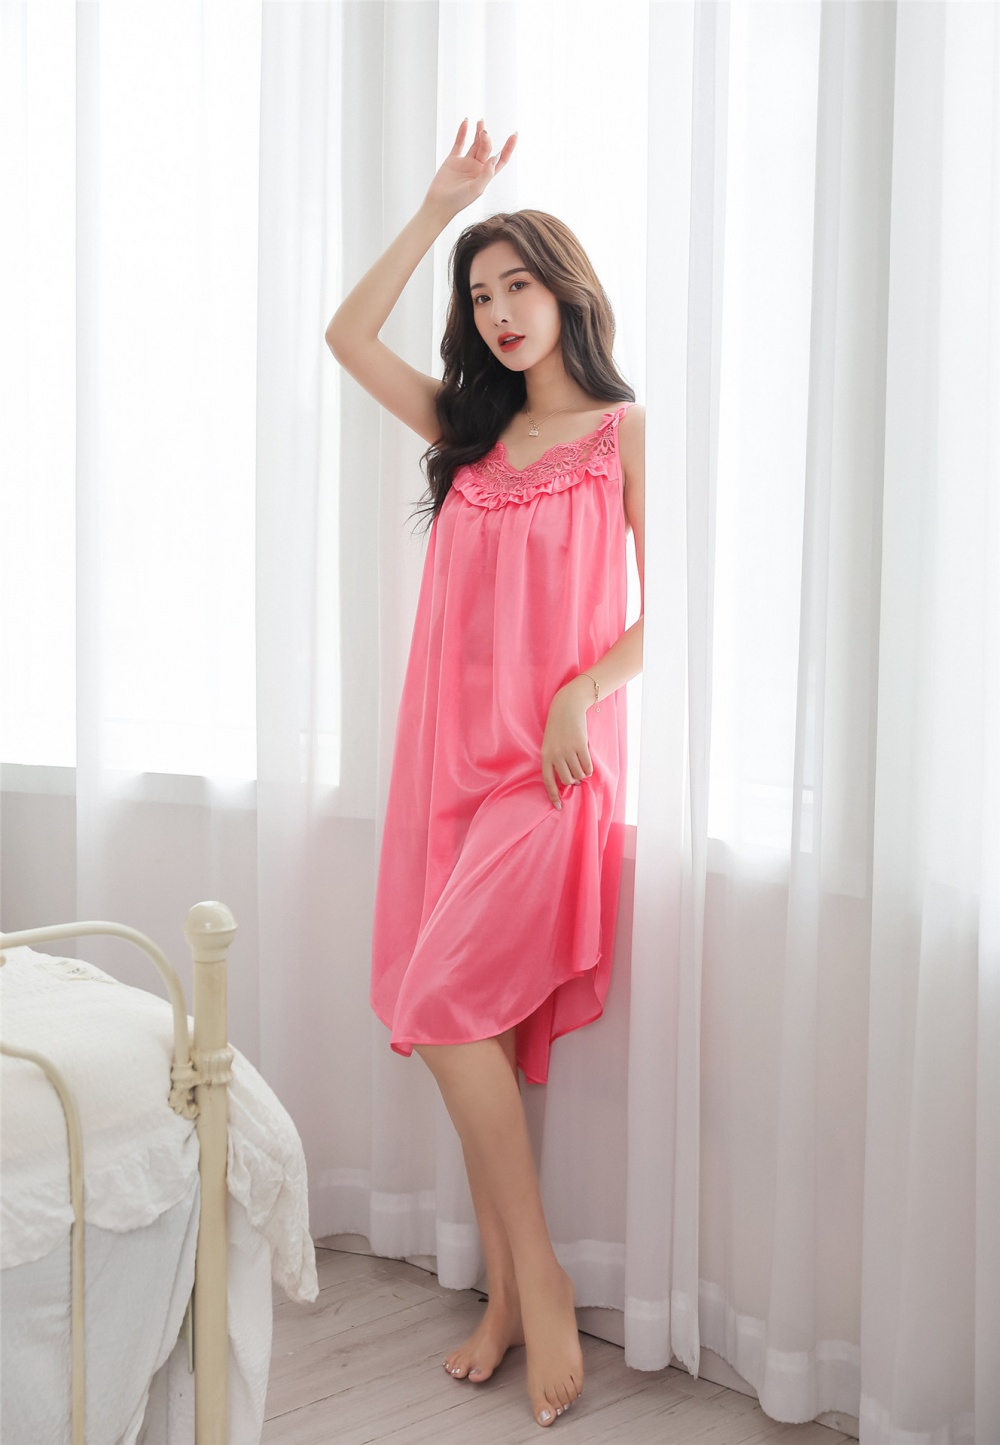 Lovely night dress Korean style pajamas for women